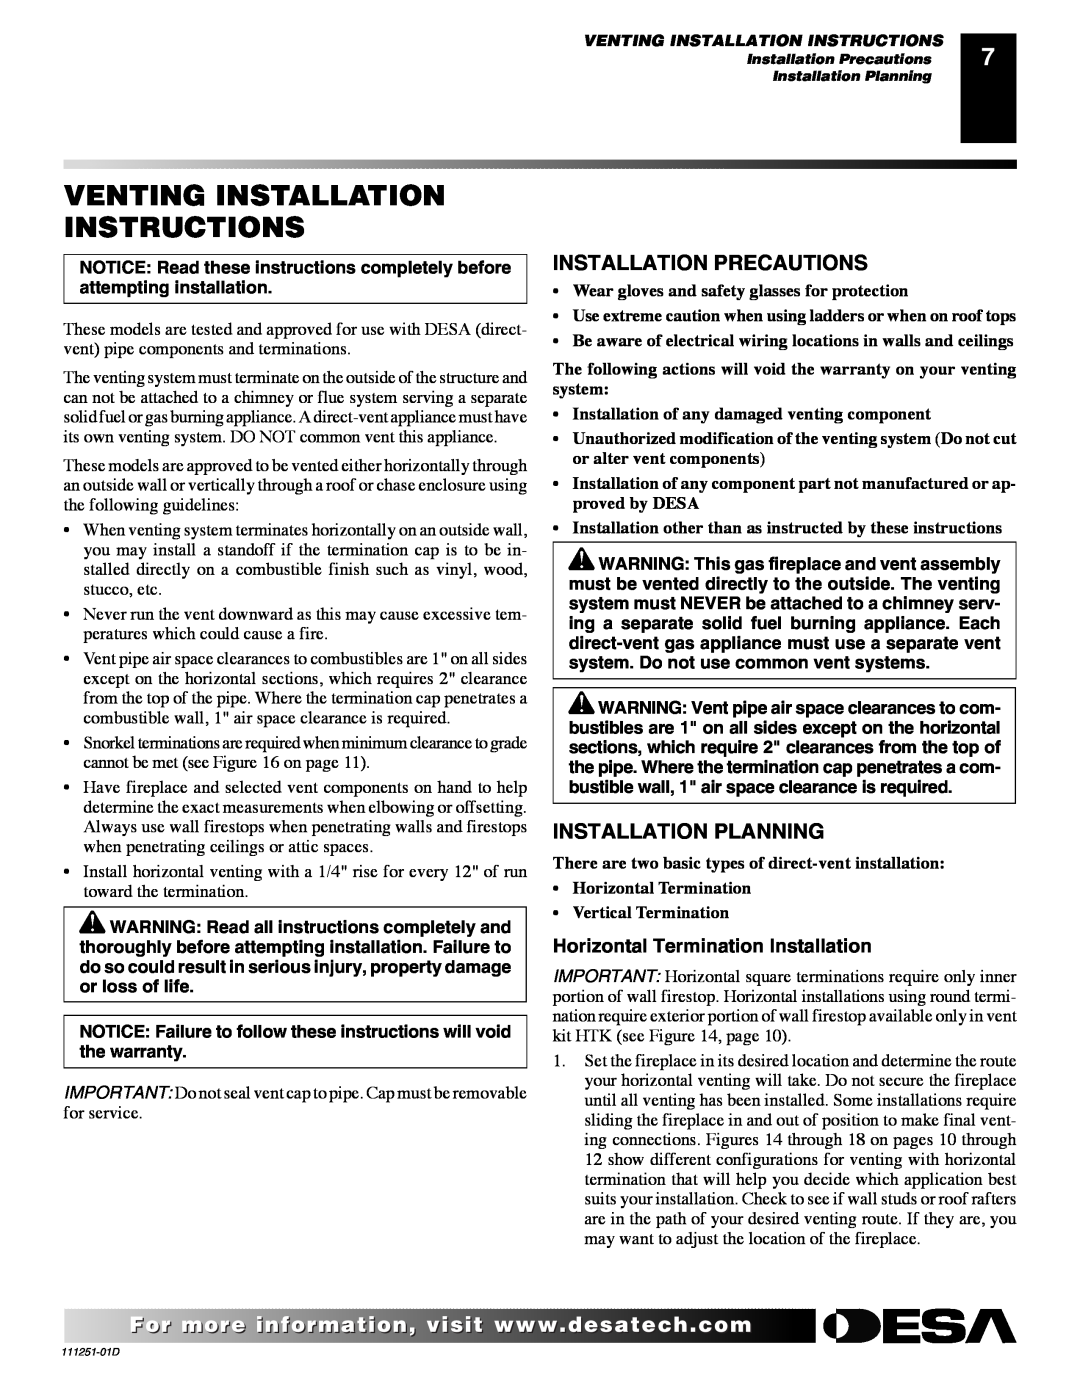 Desa (V)T36ENA SERIES, (V)T36EPA SERIES Venting Installation Instructions, Installation Precautions, Installation Planning 